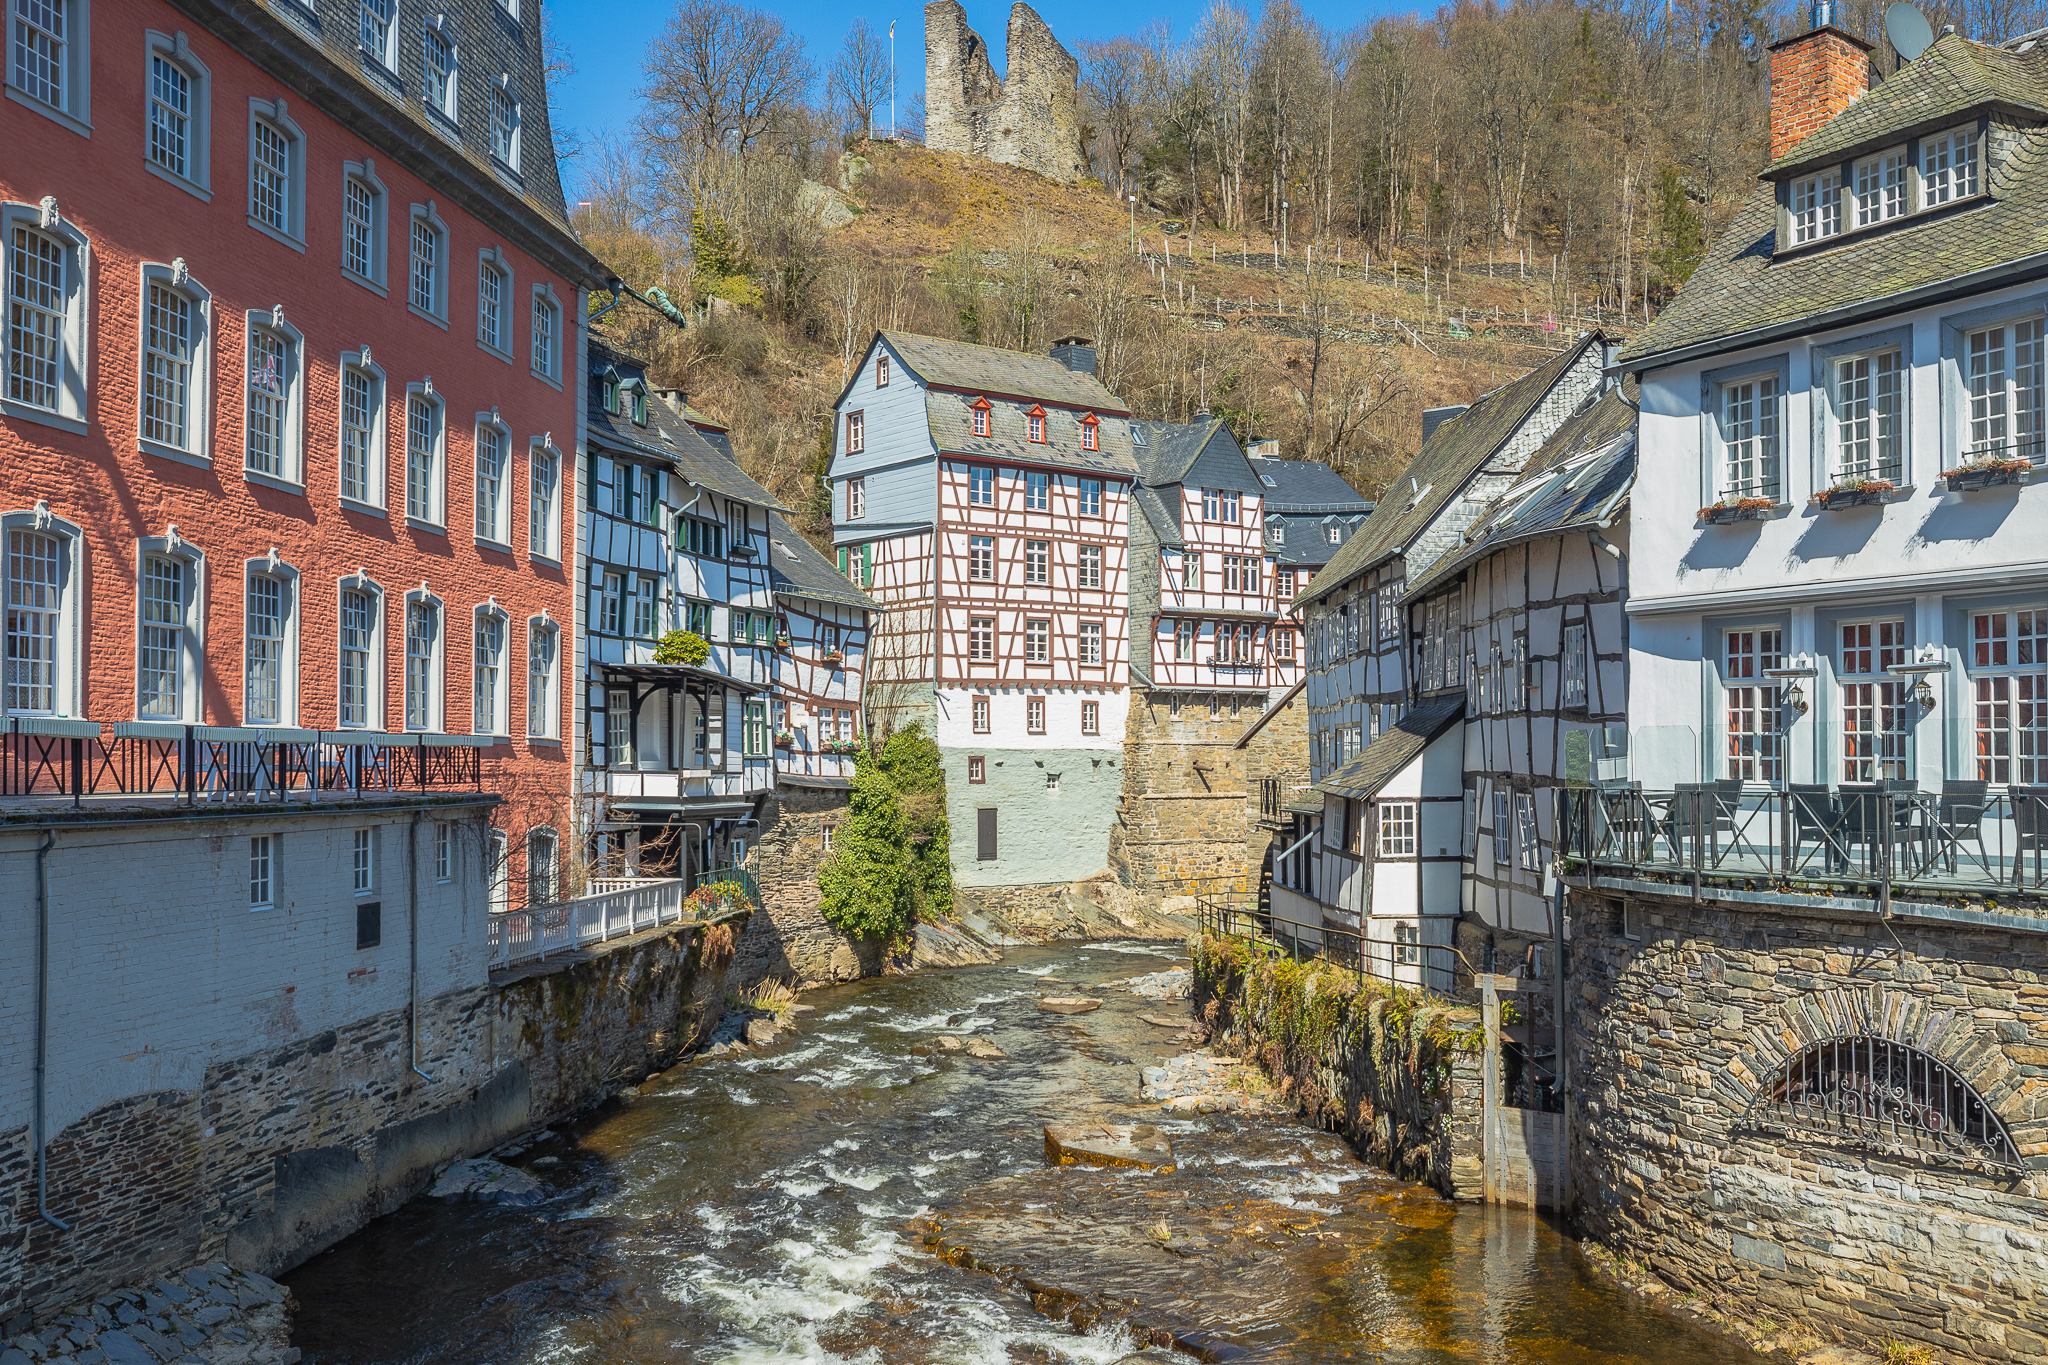 Medieval village of Monschau